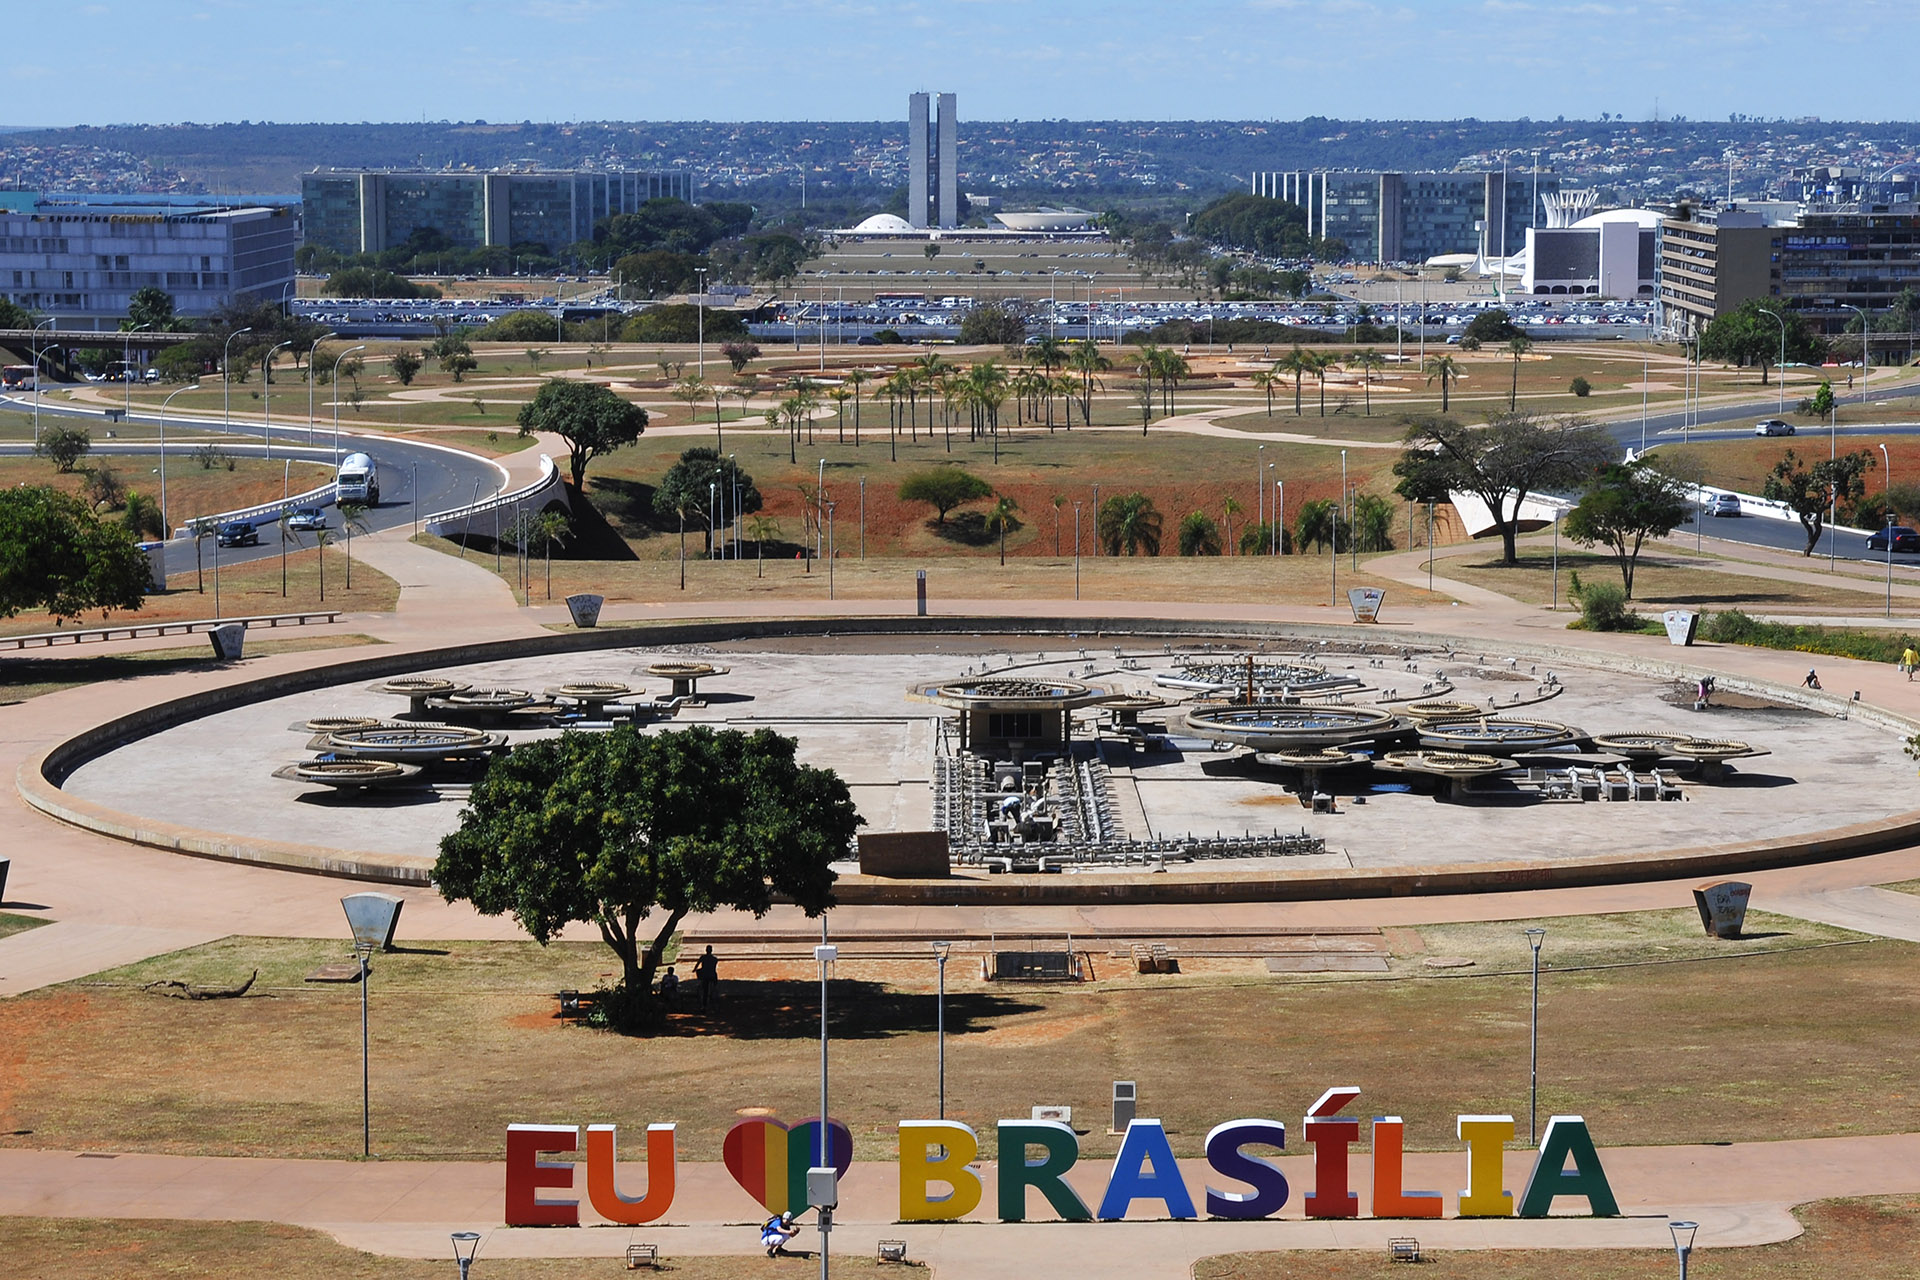 O letreiro Eu amo Brasília em frente à Torre de TV ganhou as cores do arco-íris. A mudança temporária com adesivos coloridos faz parte das comemorações do Dia Internacional da Visibilidade LGBTQI (Lésbicas, Gays, Bissexuais, Transexuais, Transgêneros, Queers e Intersexuais), celebrado na quinta-feira (28).